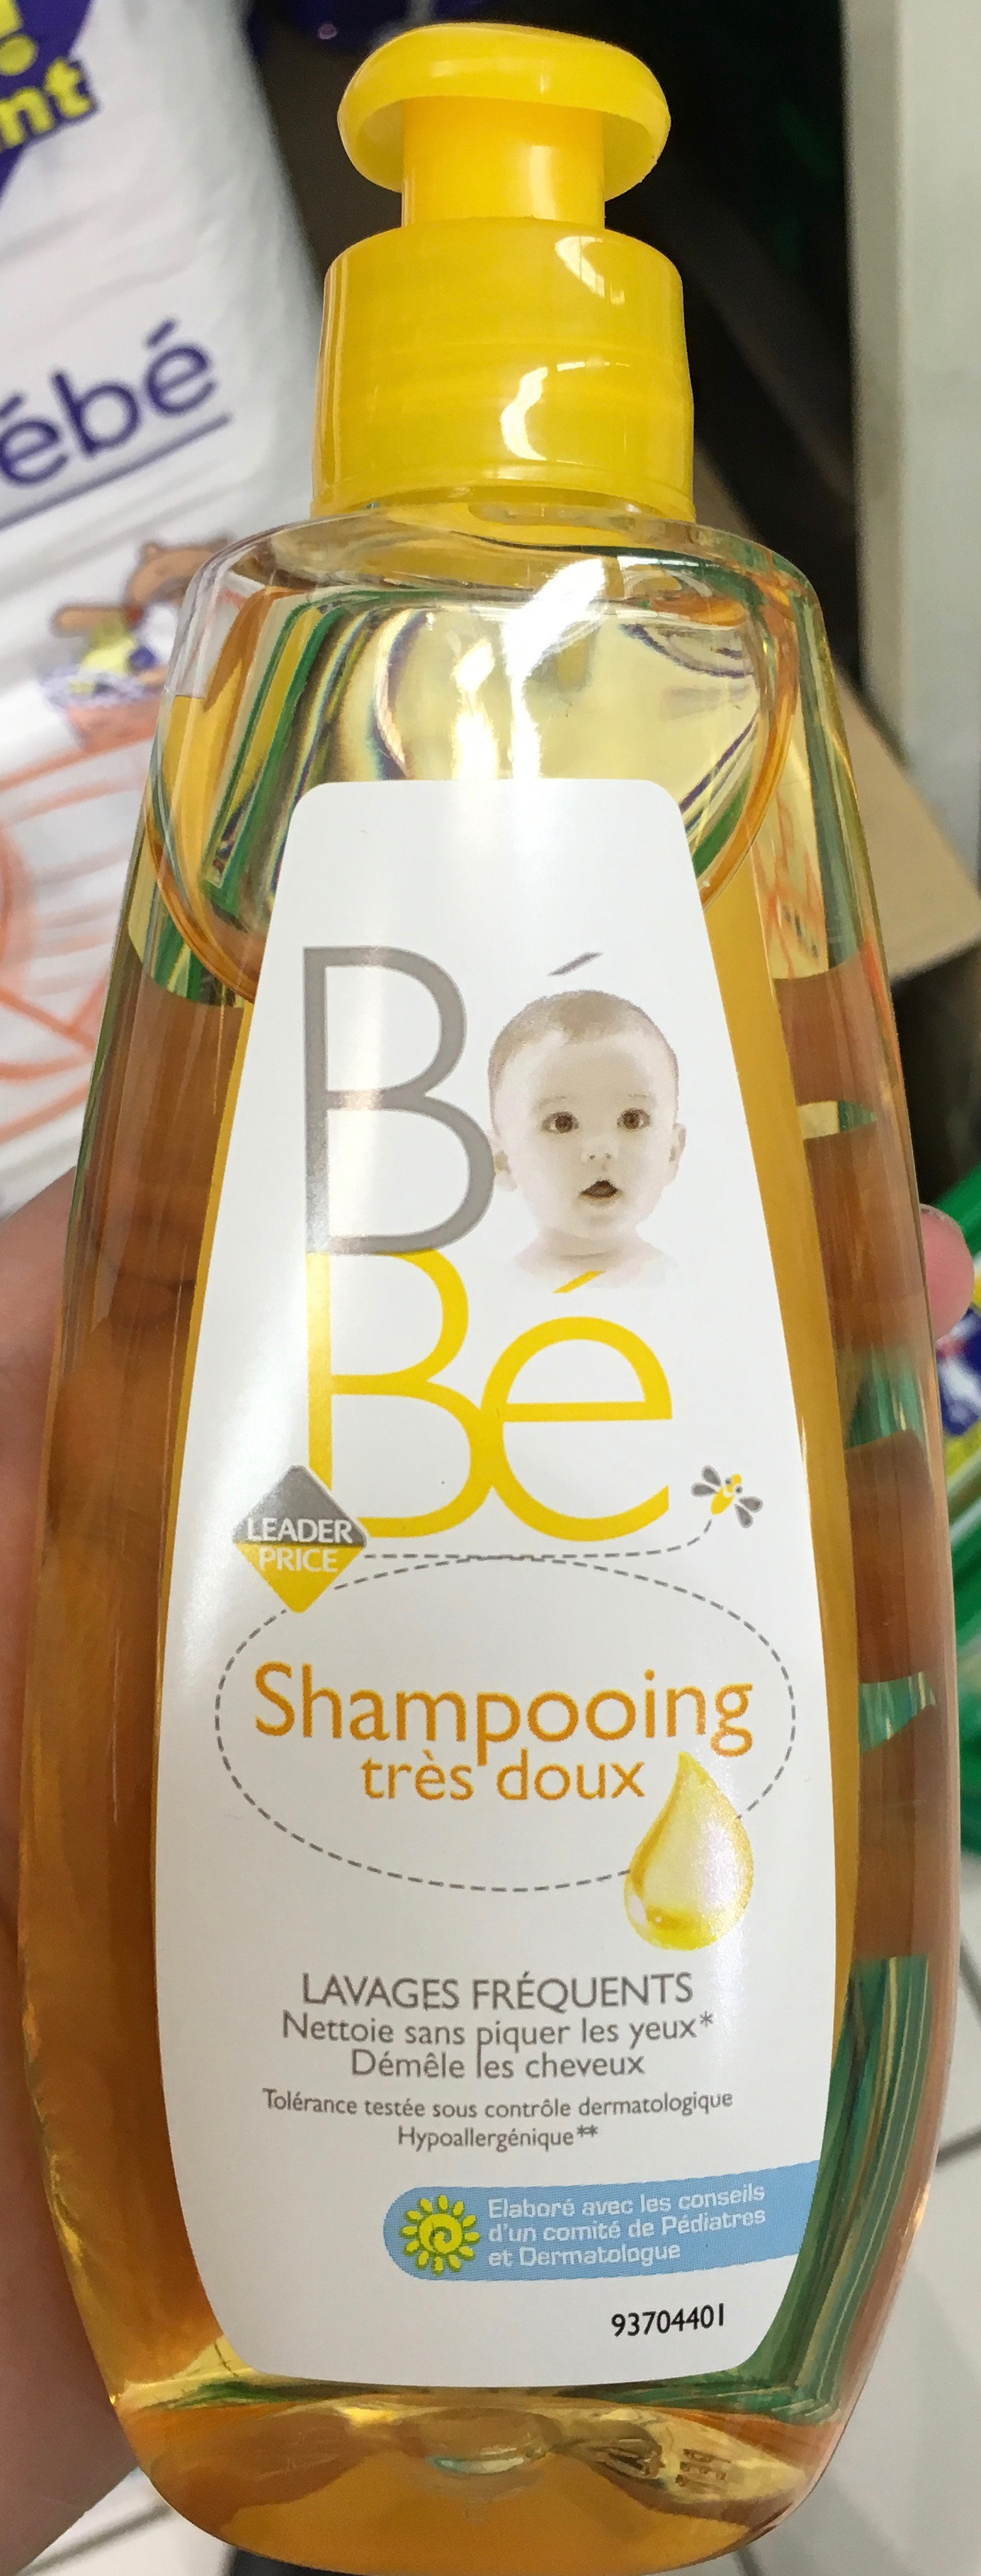 Bébé Shampooing très doux - Tuote - fr